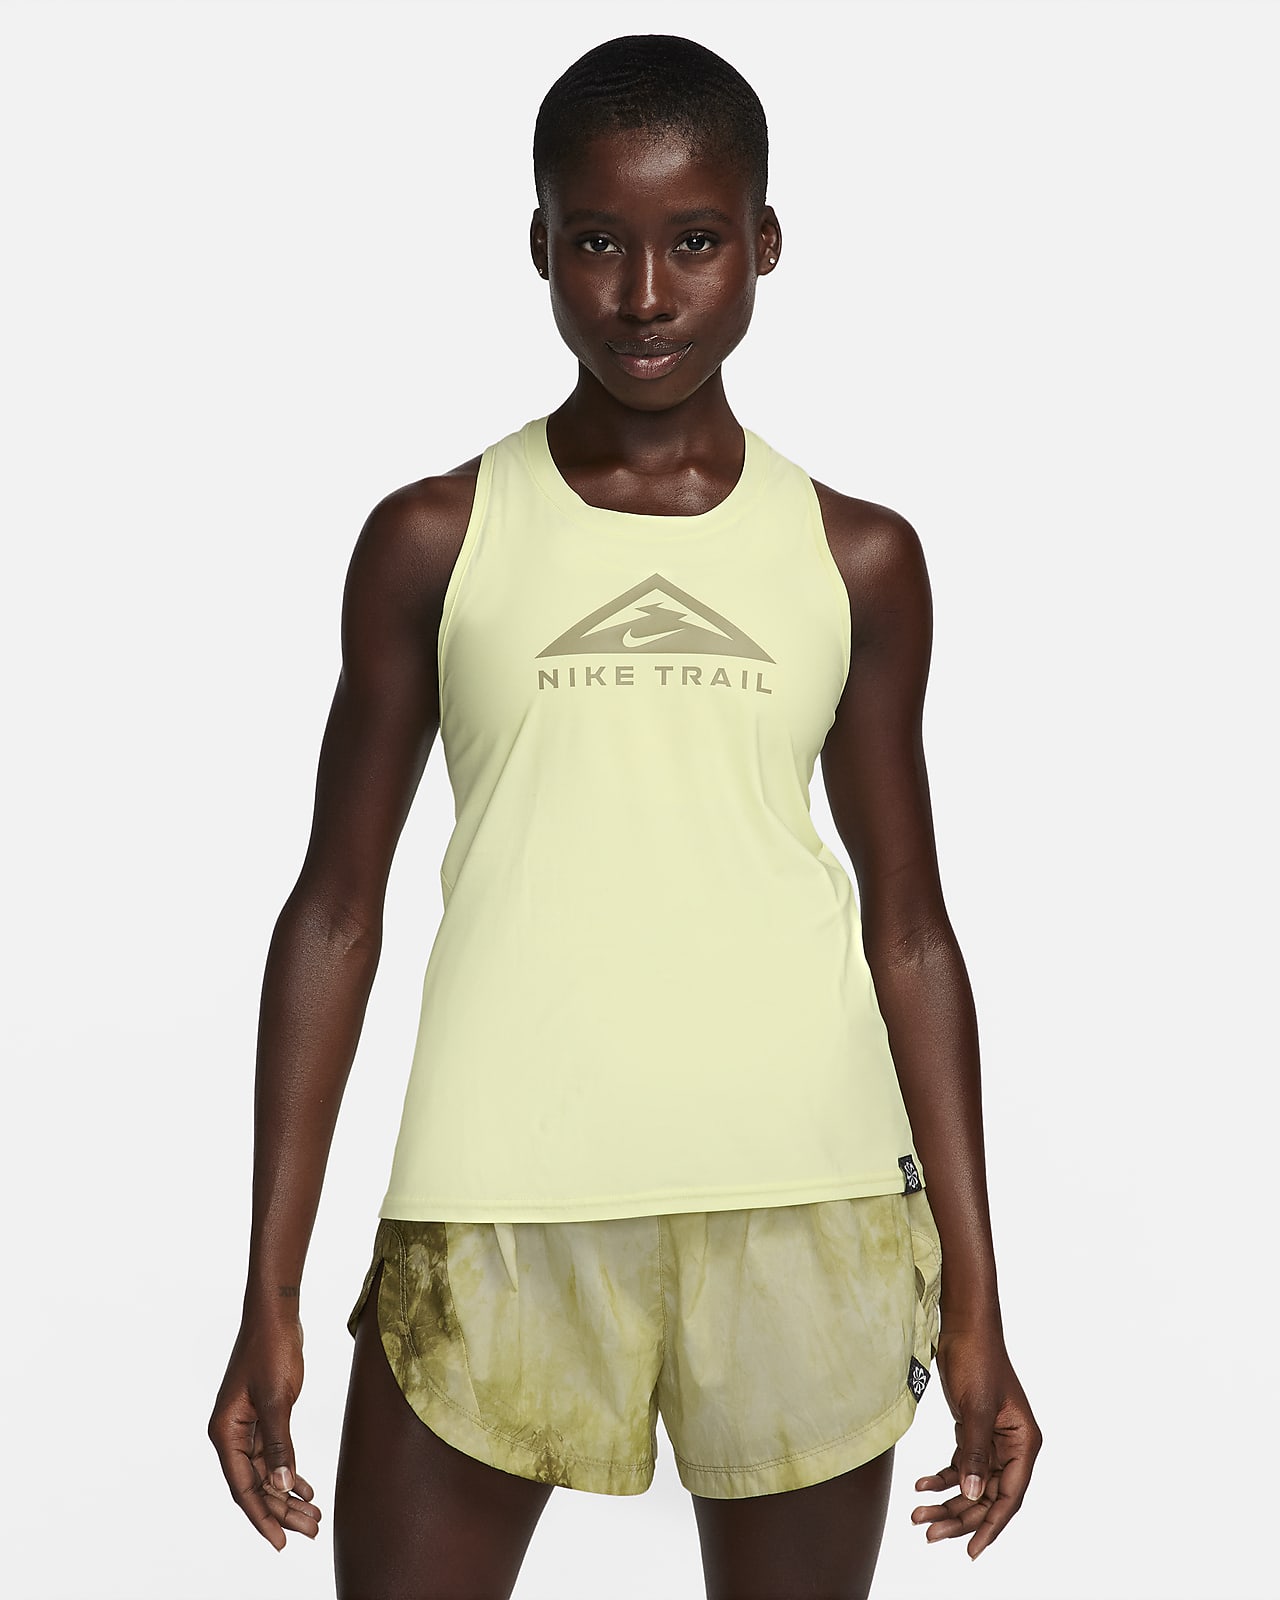 Γυναικείο φανελάκι για τρέξιμο σε ανώμαλο δρόμο Nike Dri-FIT